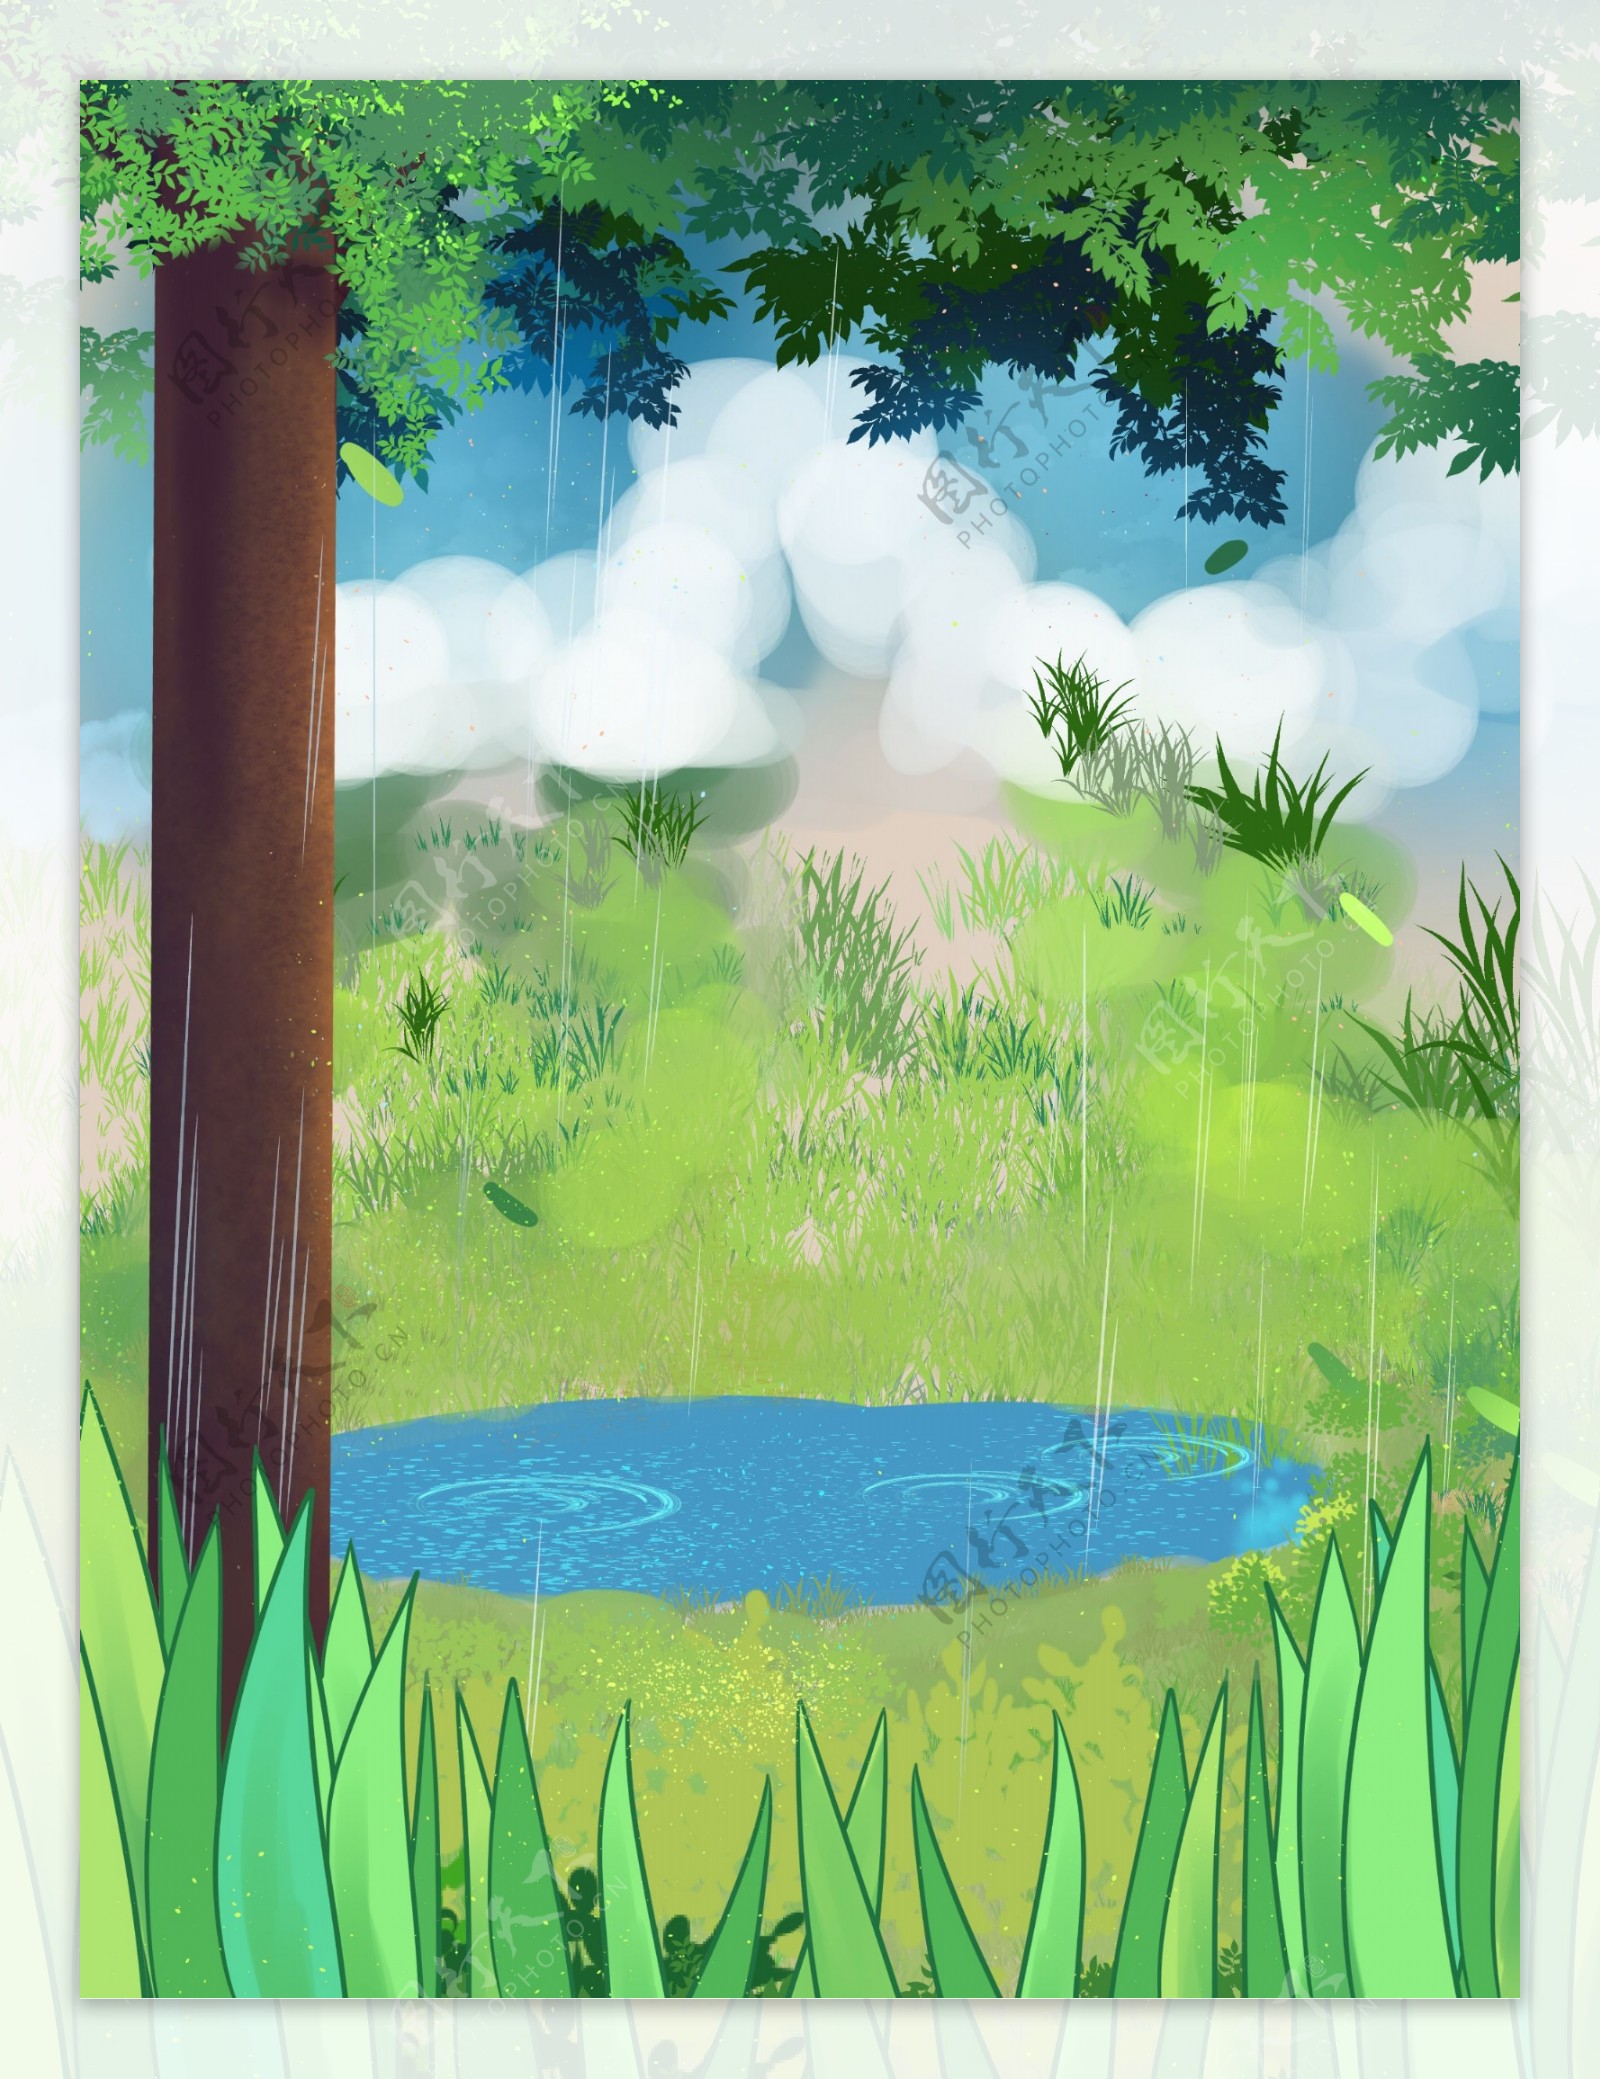 夏季大树池塘背景设计